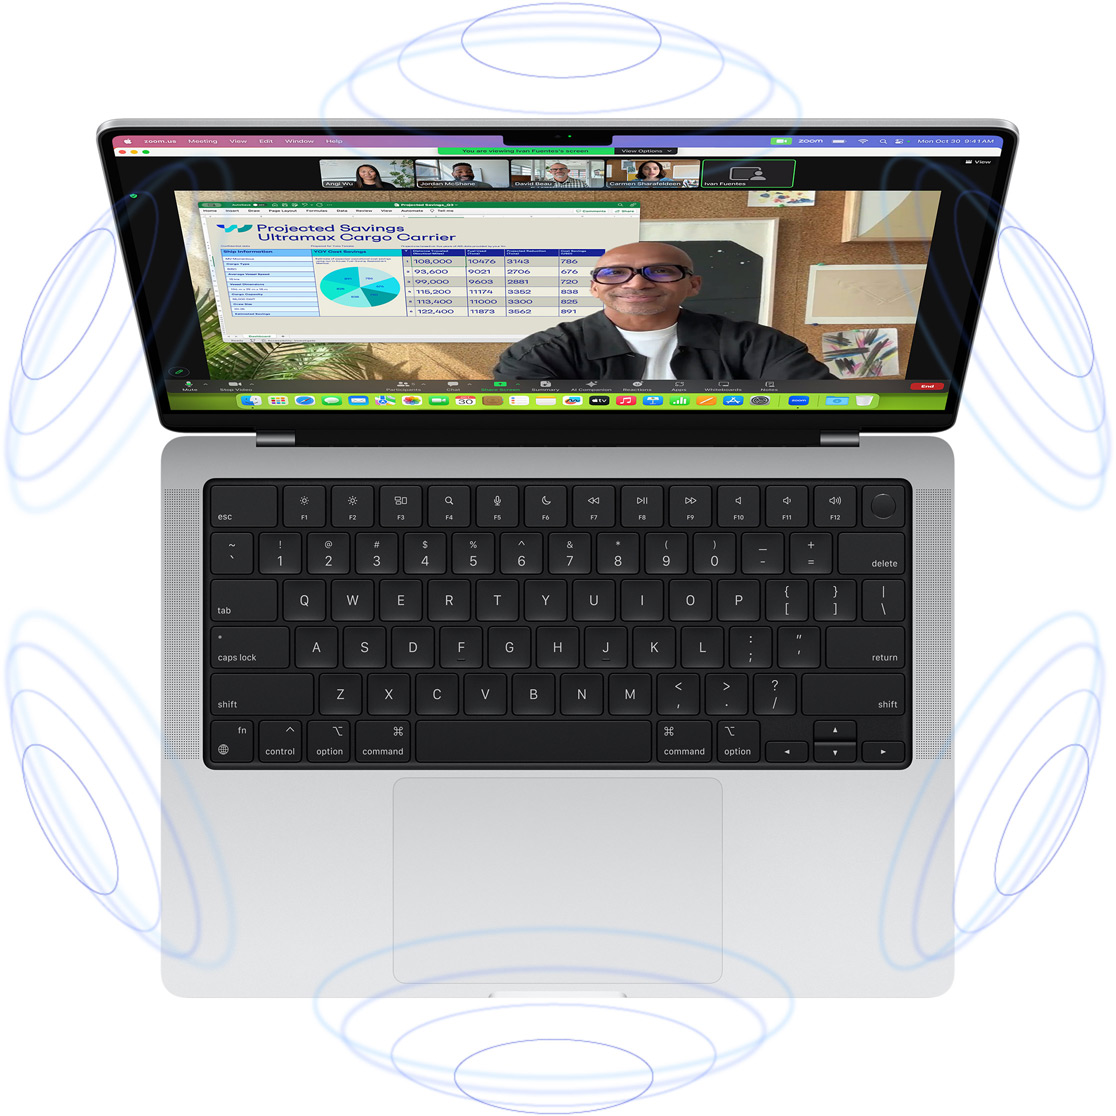 Videochamada FaceTime no MacBook Pro, rodeado de ilustrações de círculos azuis que sugerem a sensação de 3D do Áudio Espacial